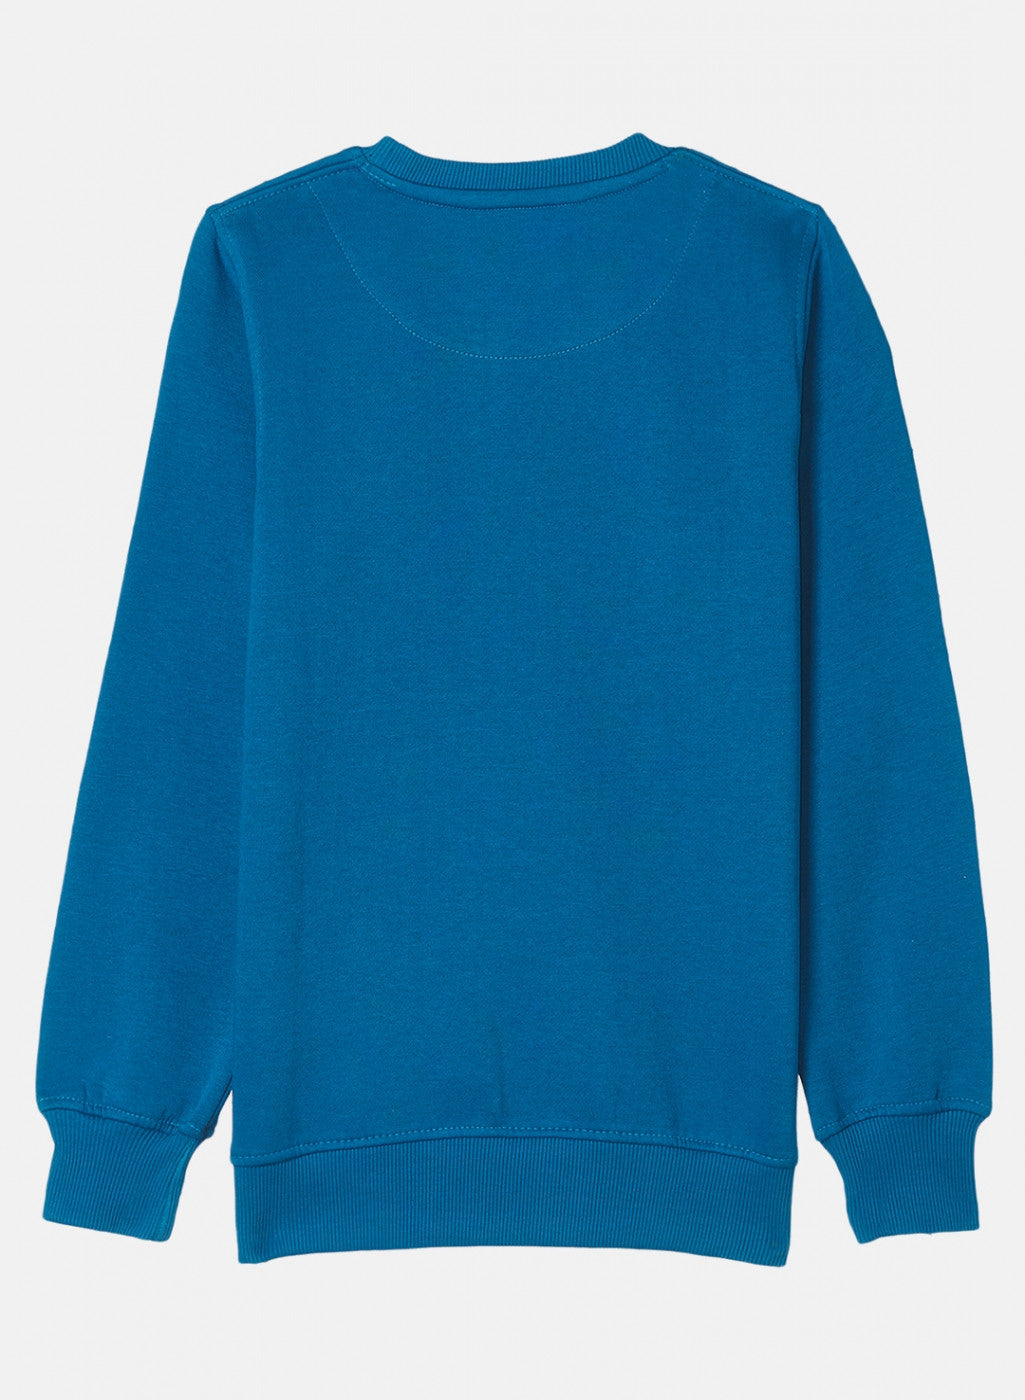 Boys Royal Blue Printed Sweatshirt